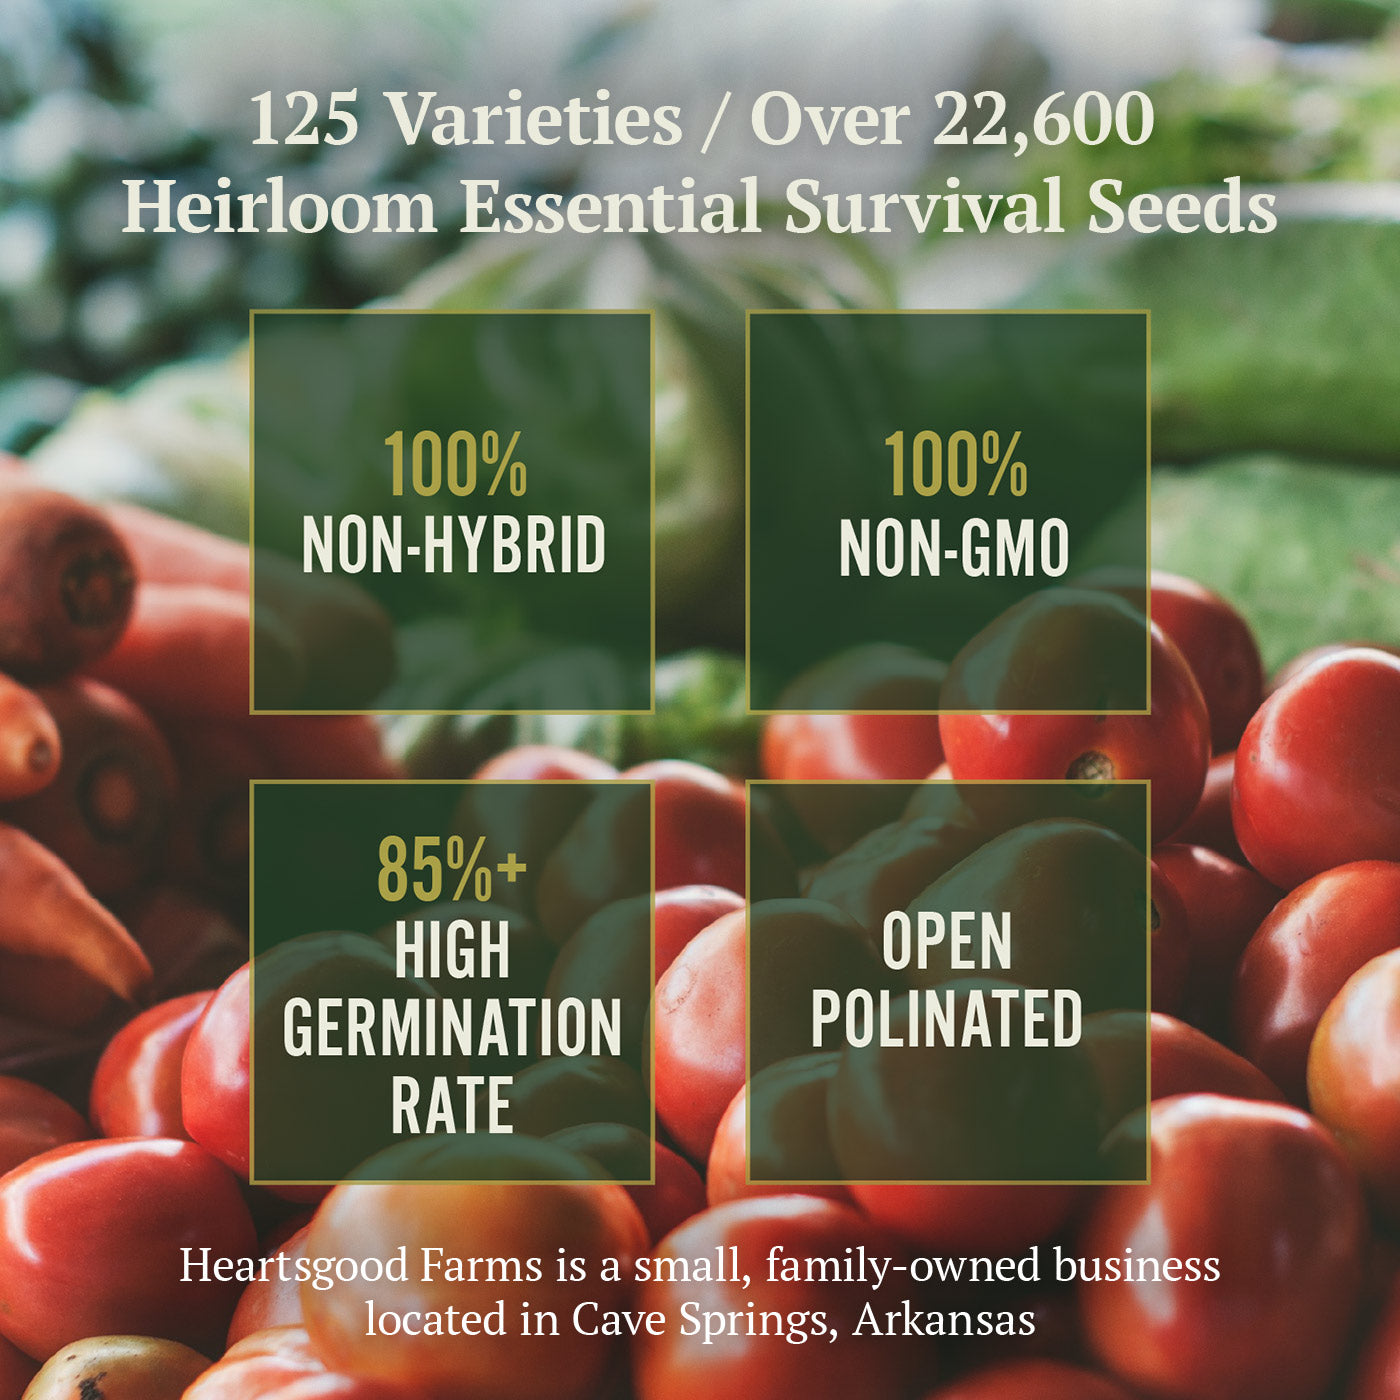 Seed Box by Garden Pack - 100 Varieties of Vegetables, Herbs